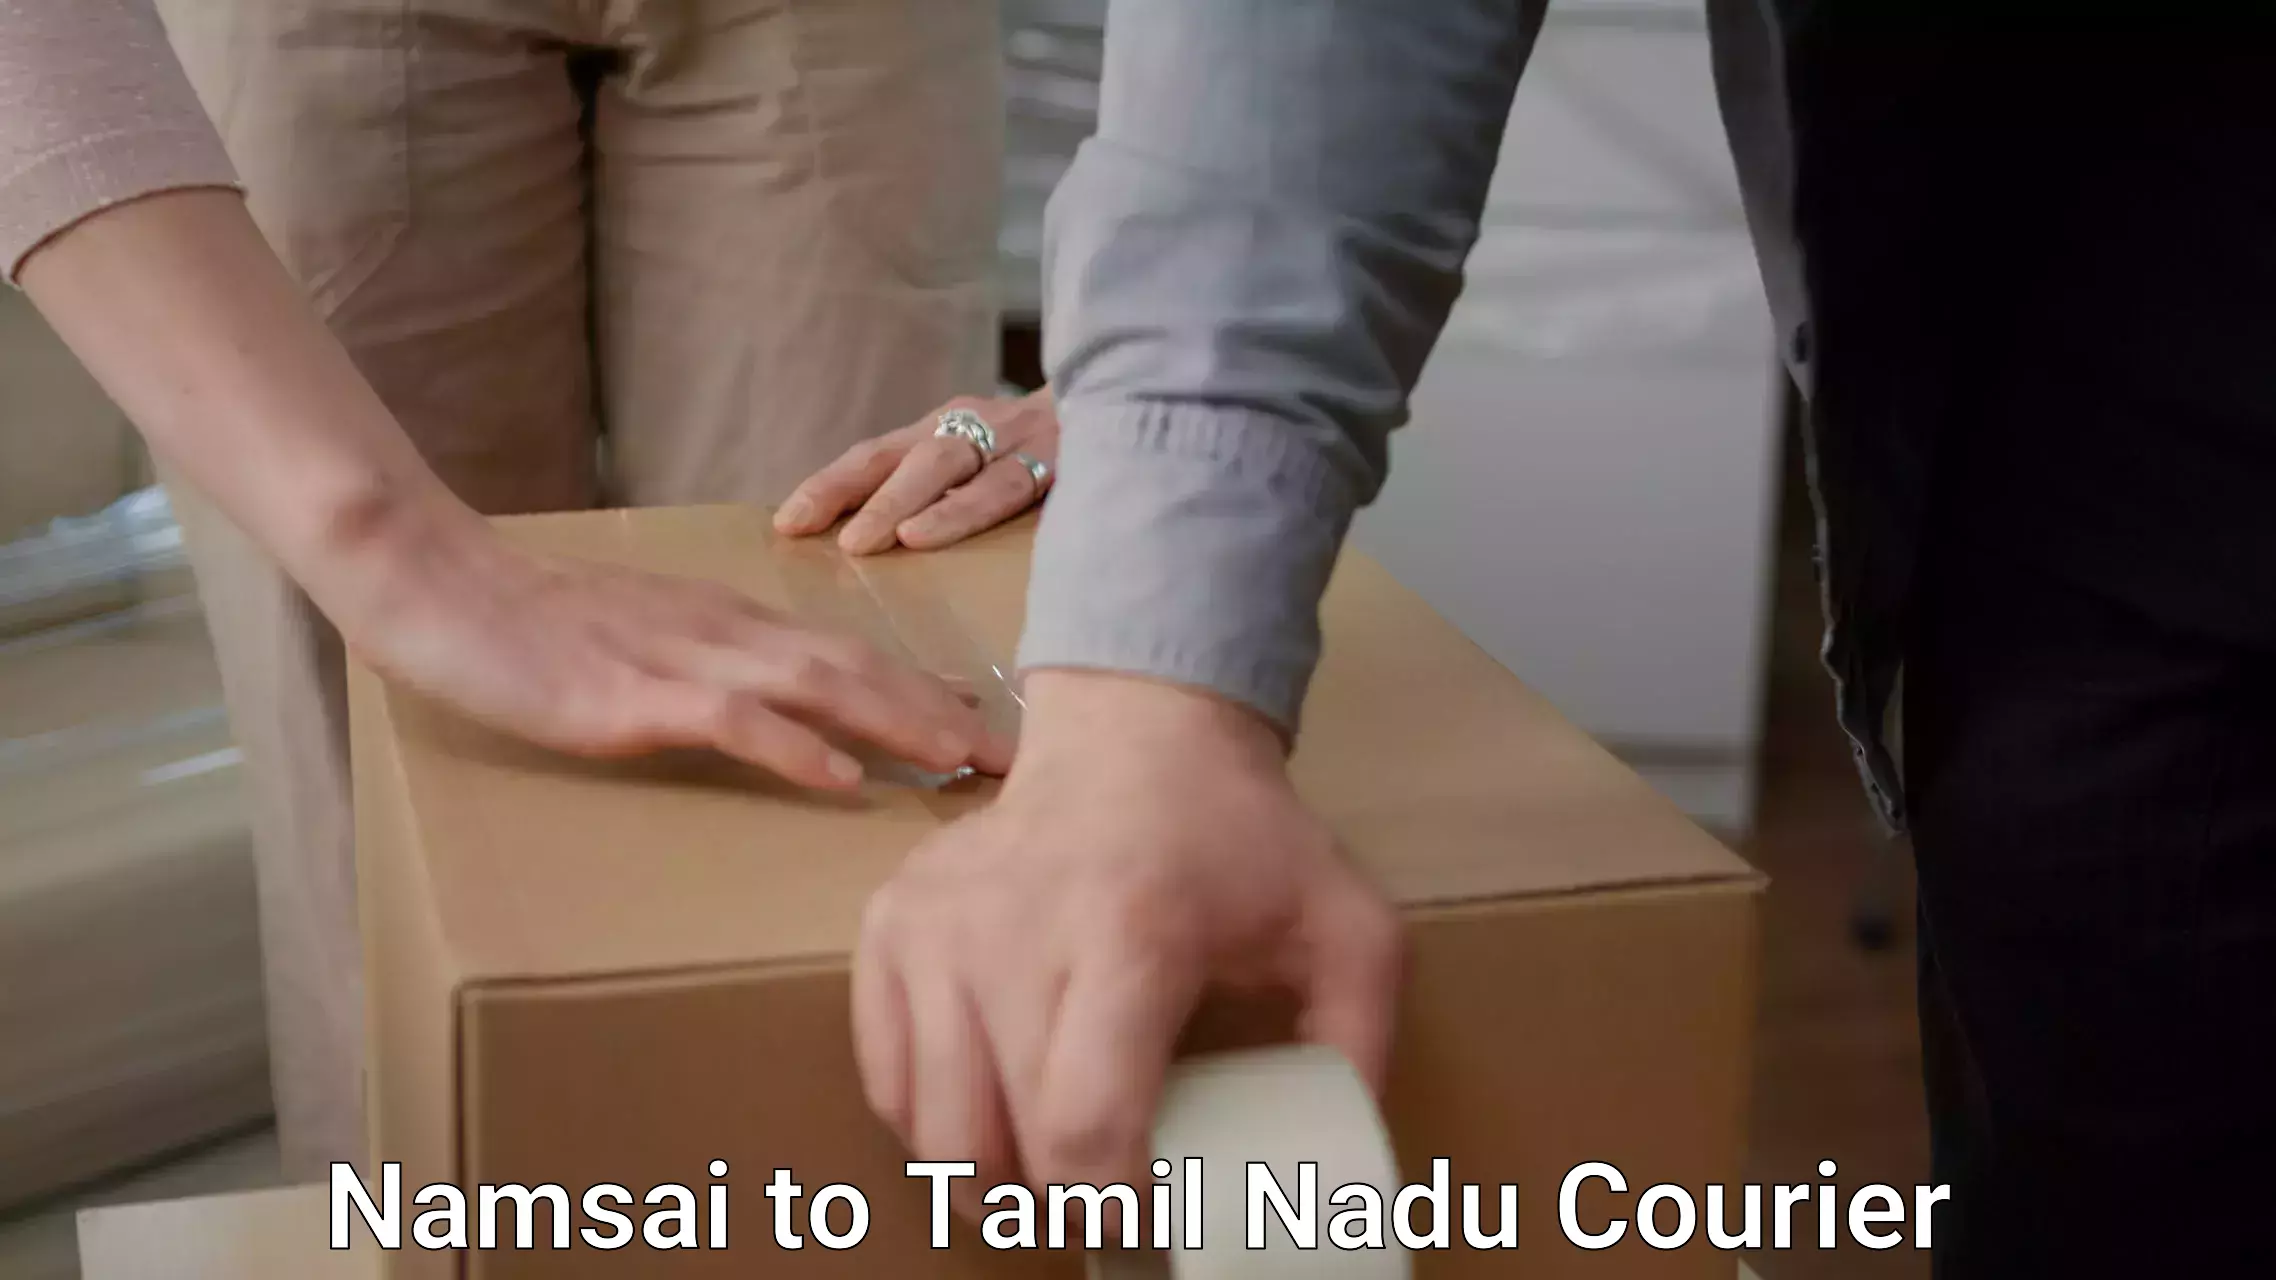 Smooth moving experience Namsai to Thiruvadanai